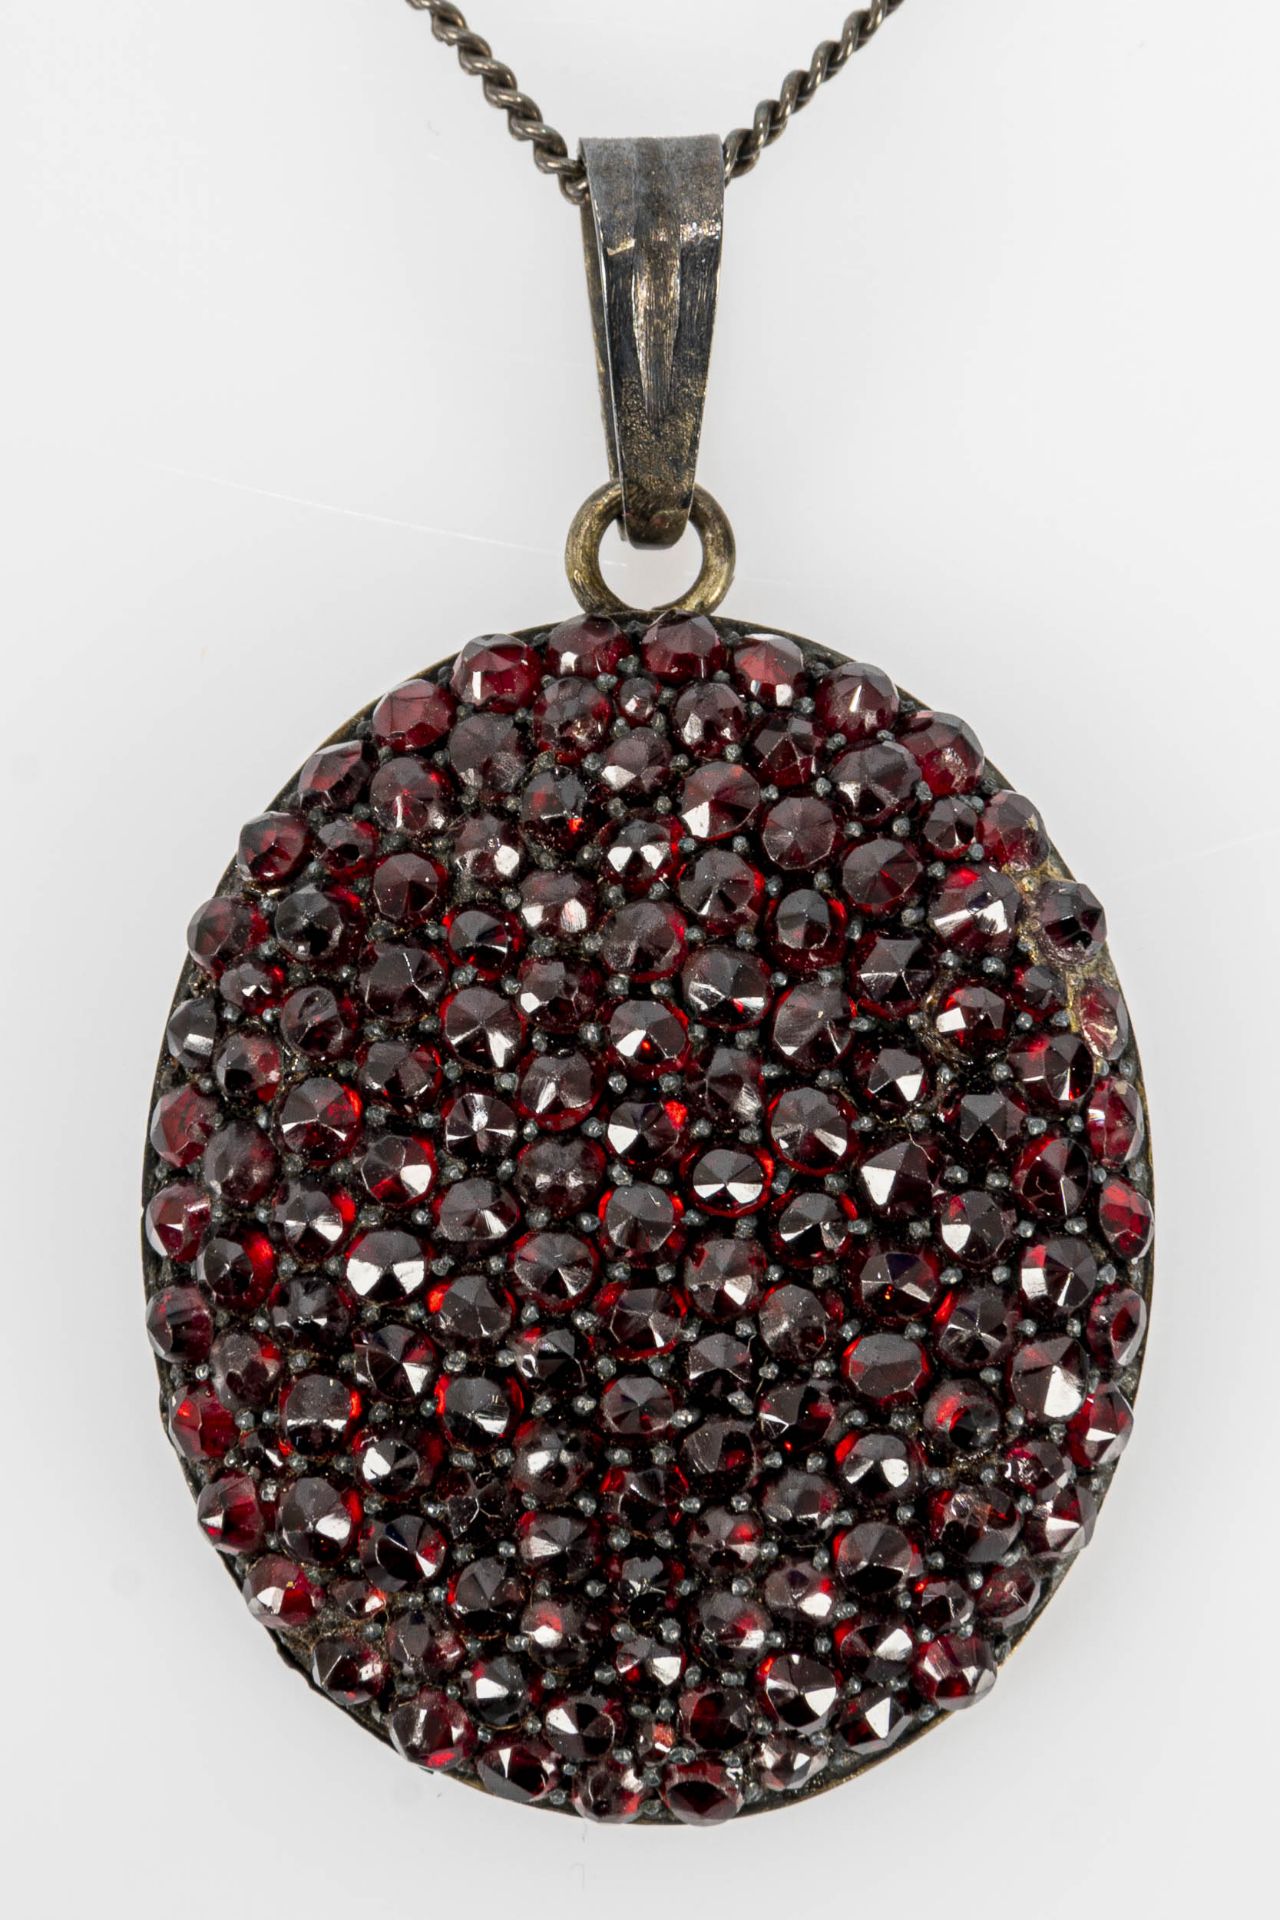 Silberne Halskette/ Gliederkette, Länge ca. 45 cm, mit Granat besetztem ovalem Kettenanhänger an be - Bild 2 aus 7